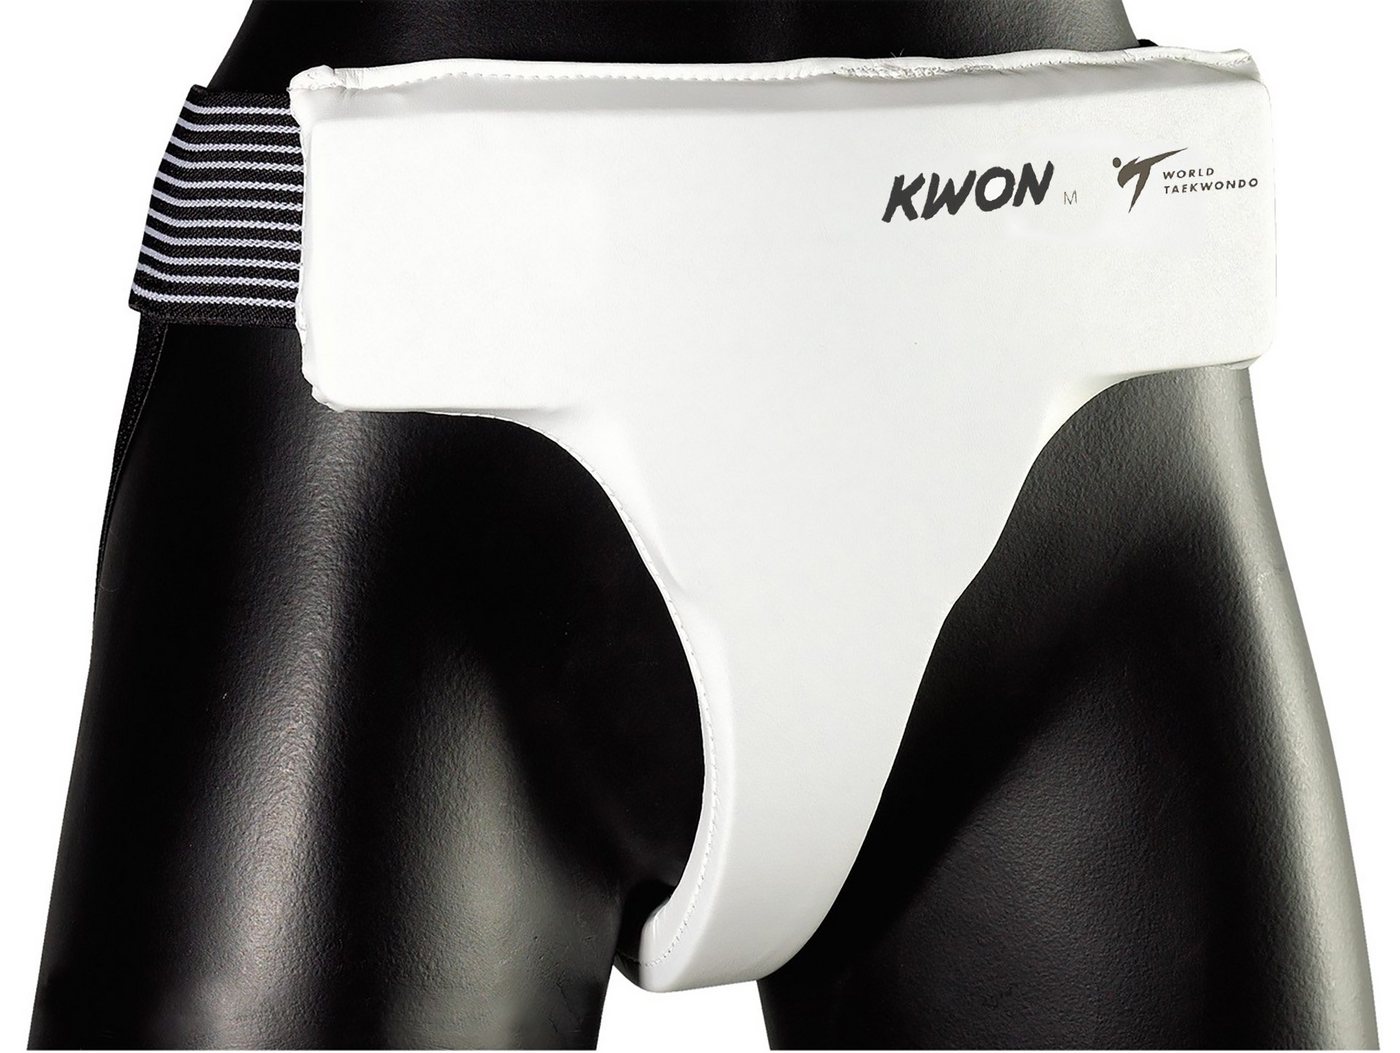 KWON Tiefschutz Damen Unterleibschutz Tiefschützer Professional WT anerkannt Taekwondo, Frauen, Mädchen, Boxen, Karate, Kickboxen, Muay Thai, Krav Maga von KWON